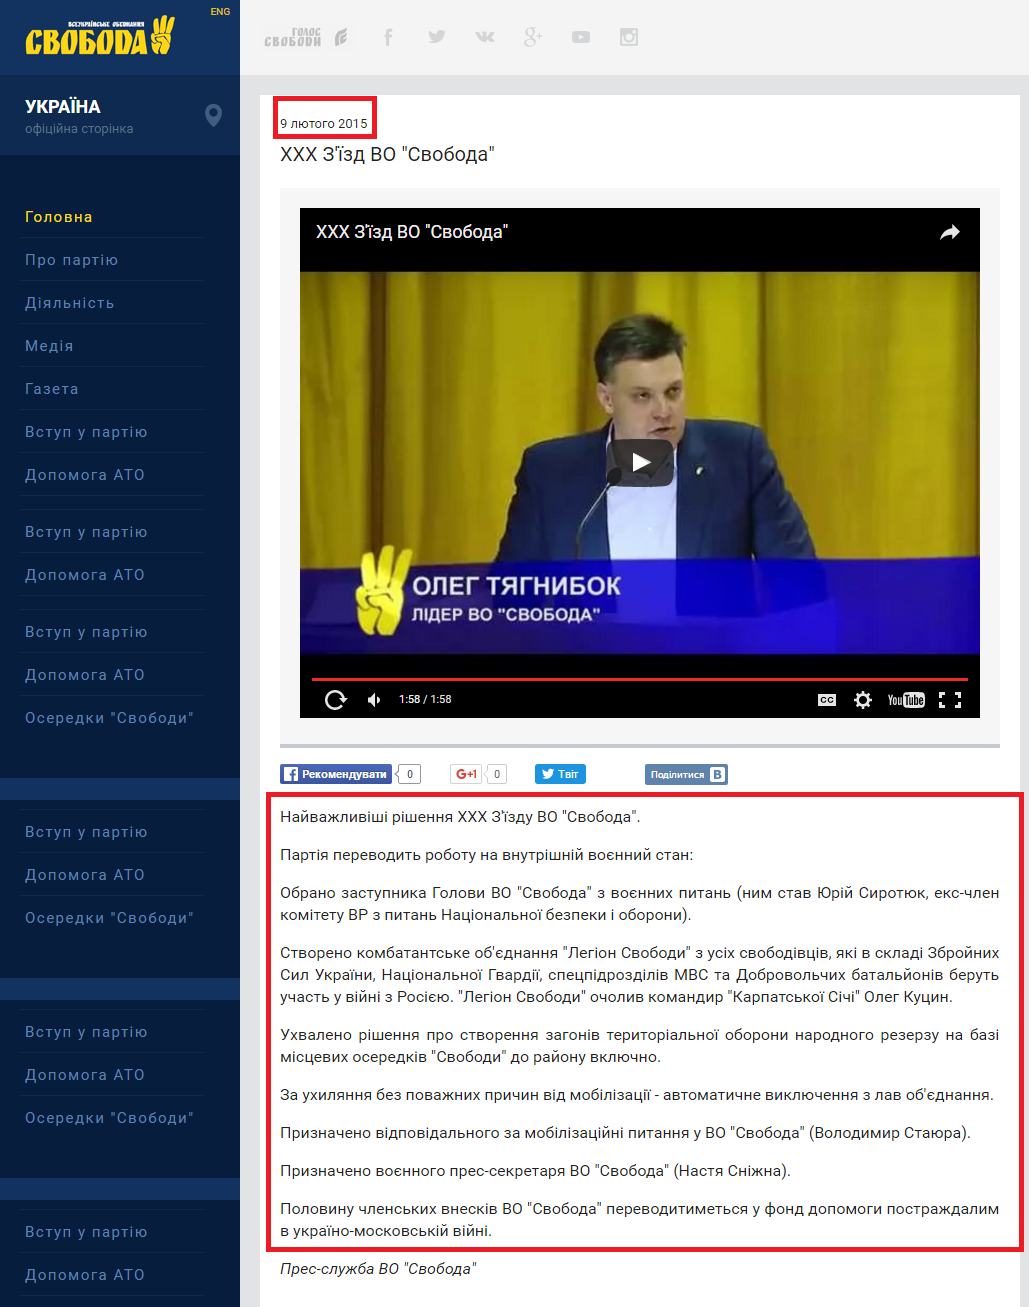 http://svoboda.org.ua/media/videos/00012753/